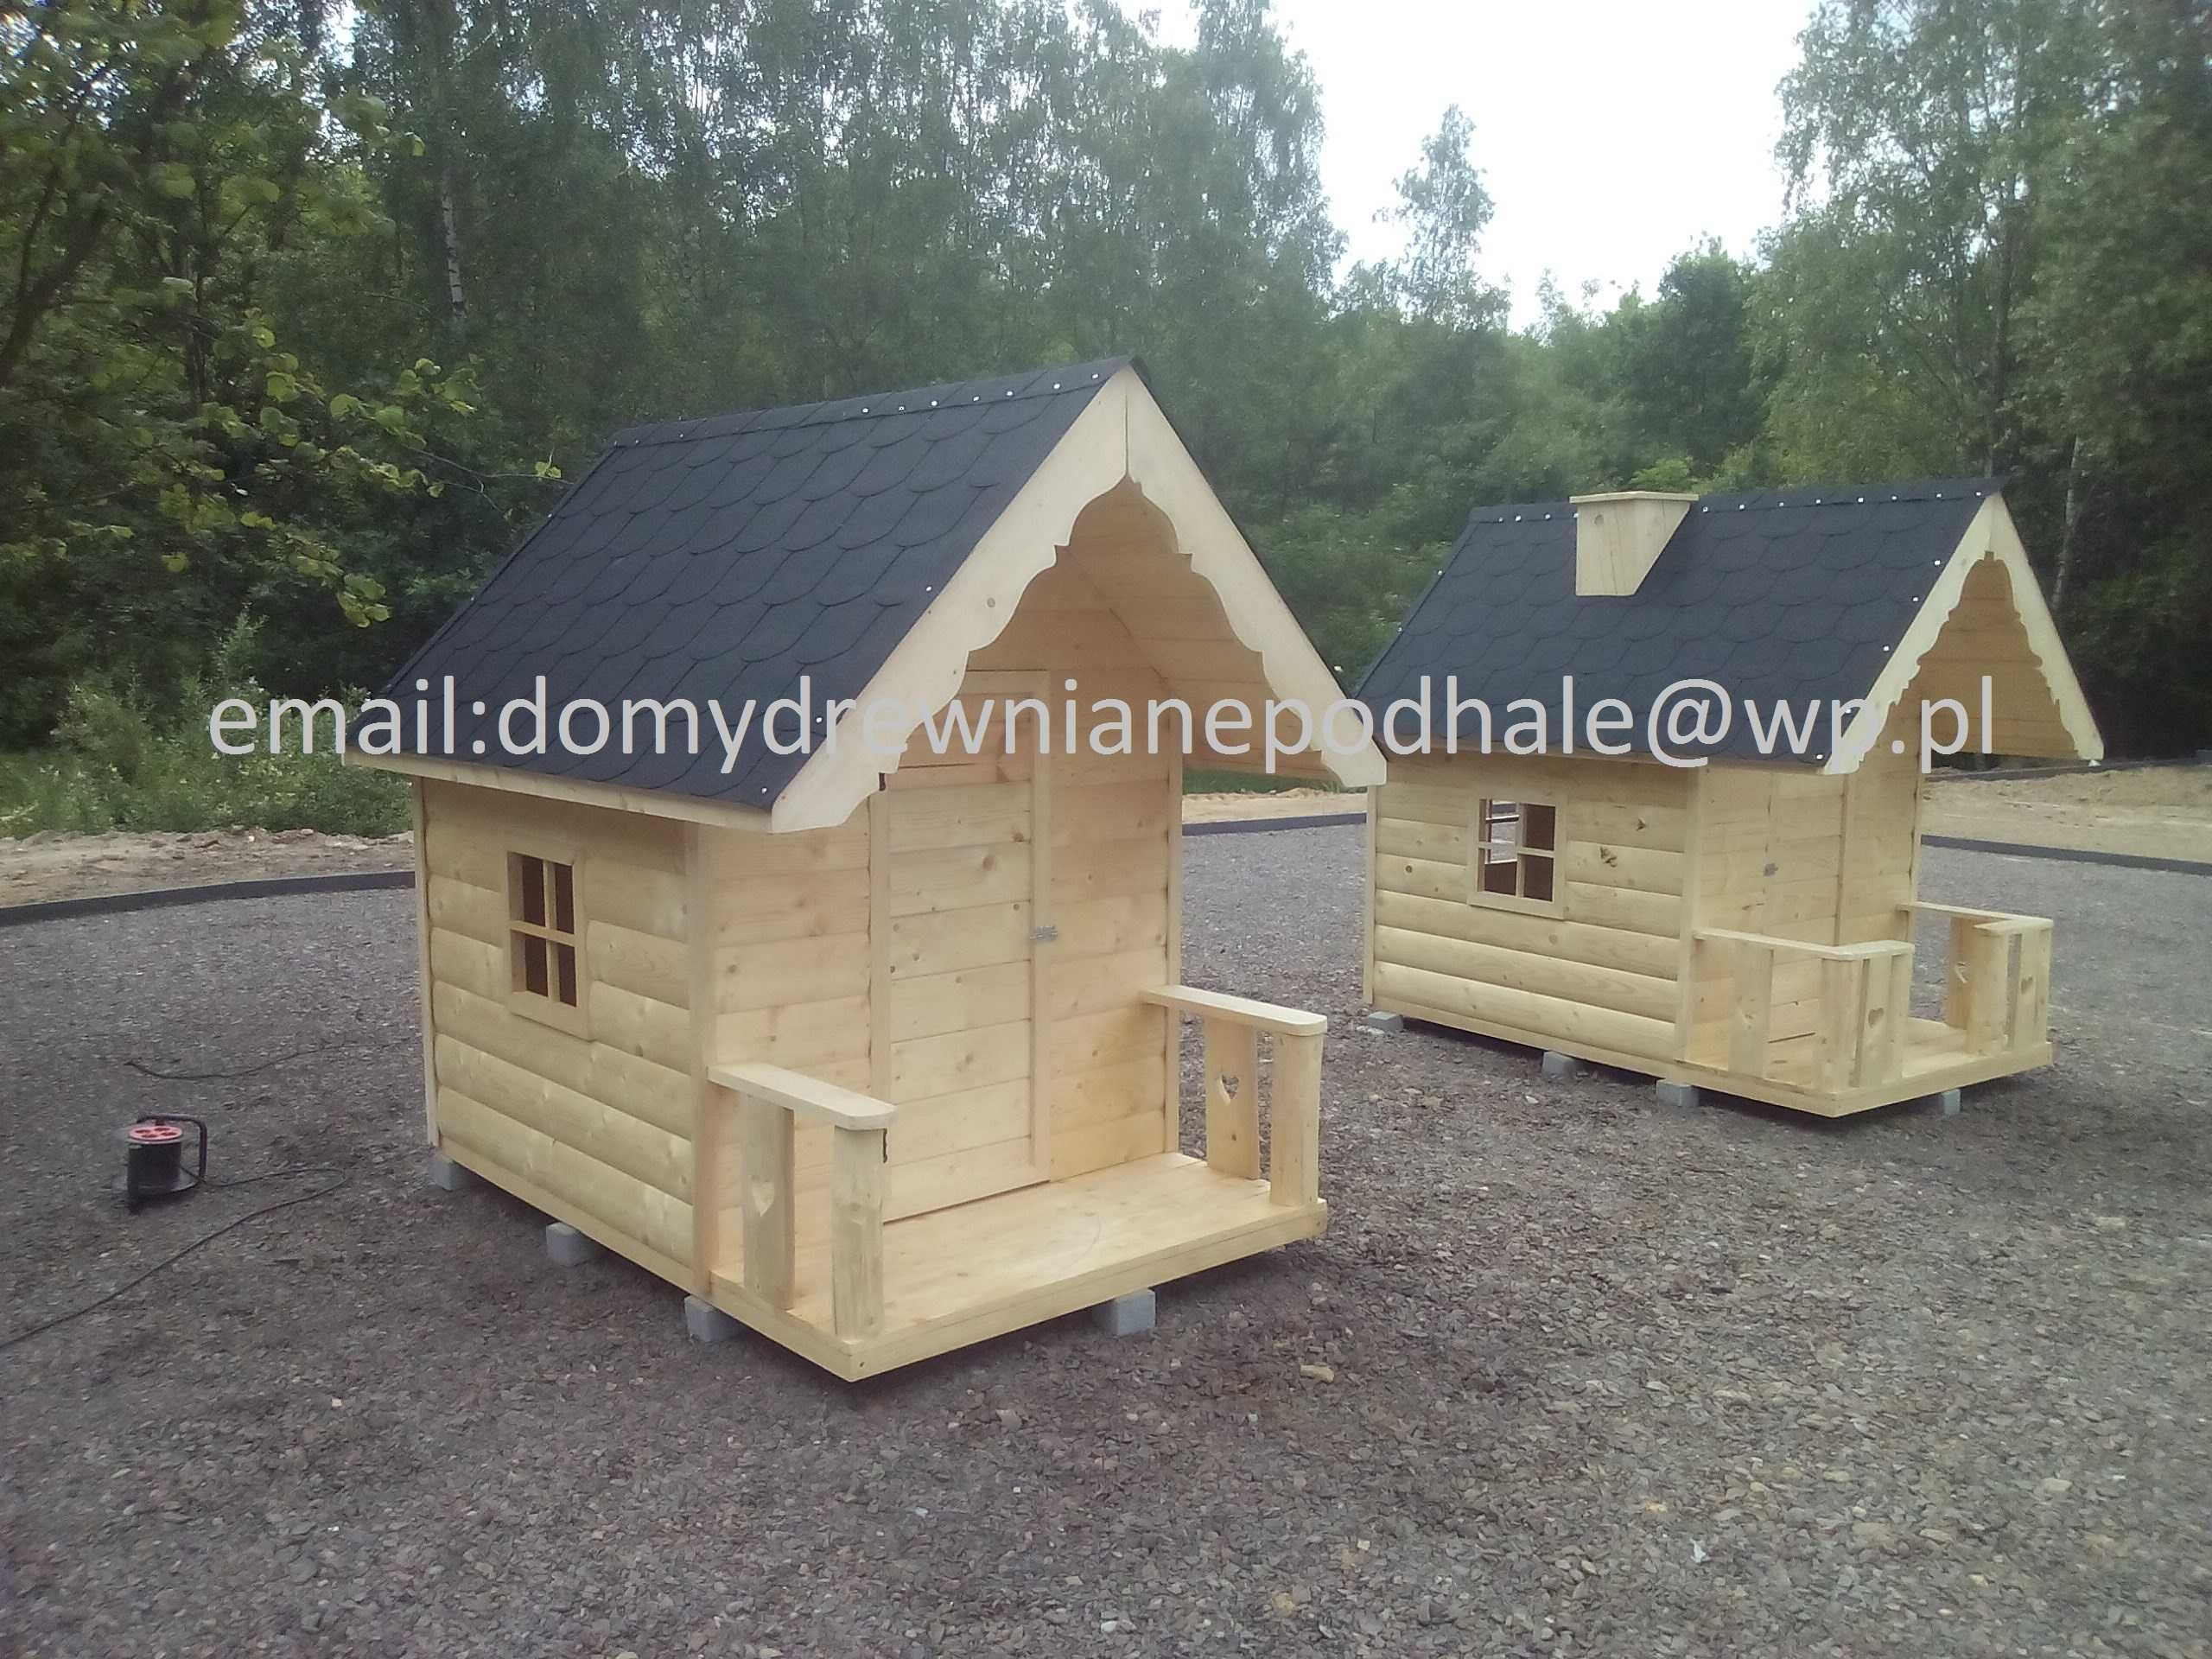 Deska gruba świerkowa + konstrukcja domek dla dzieci drewniany stylowy